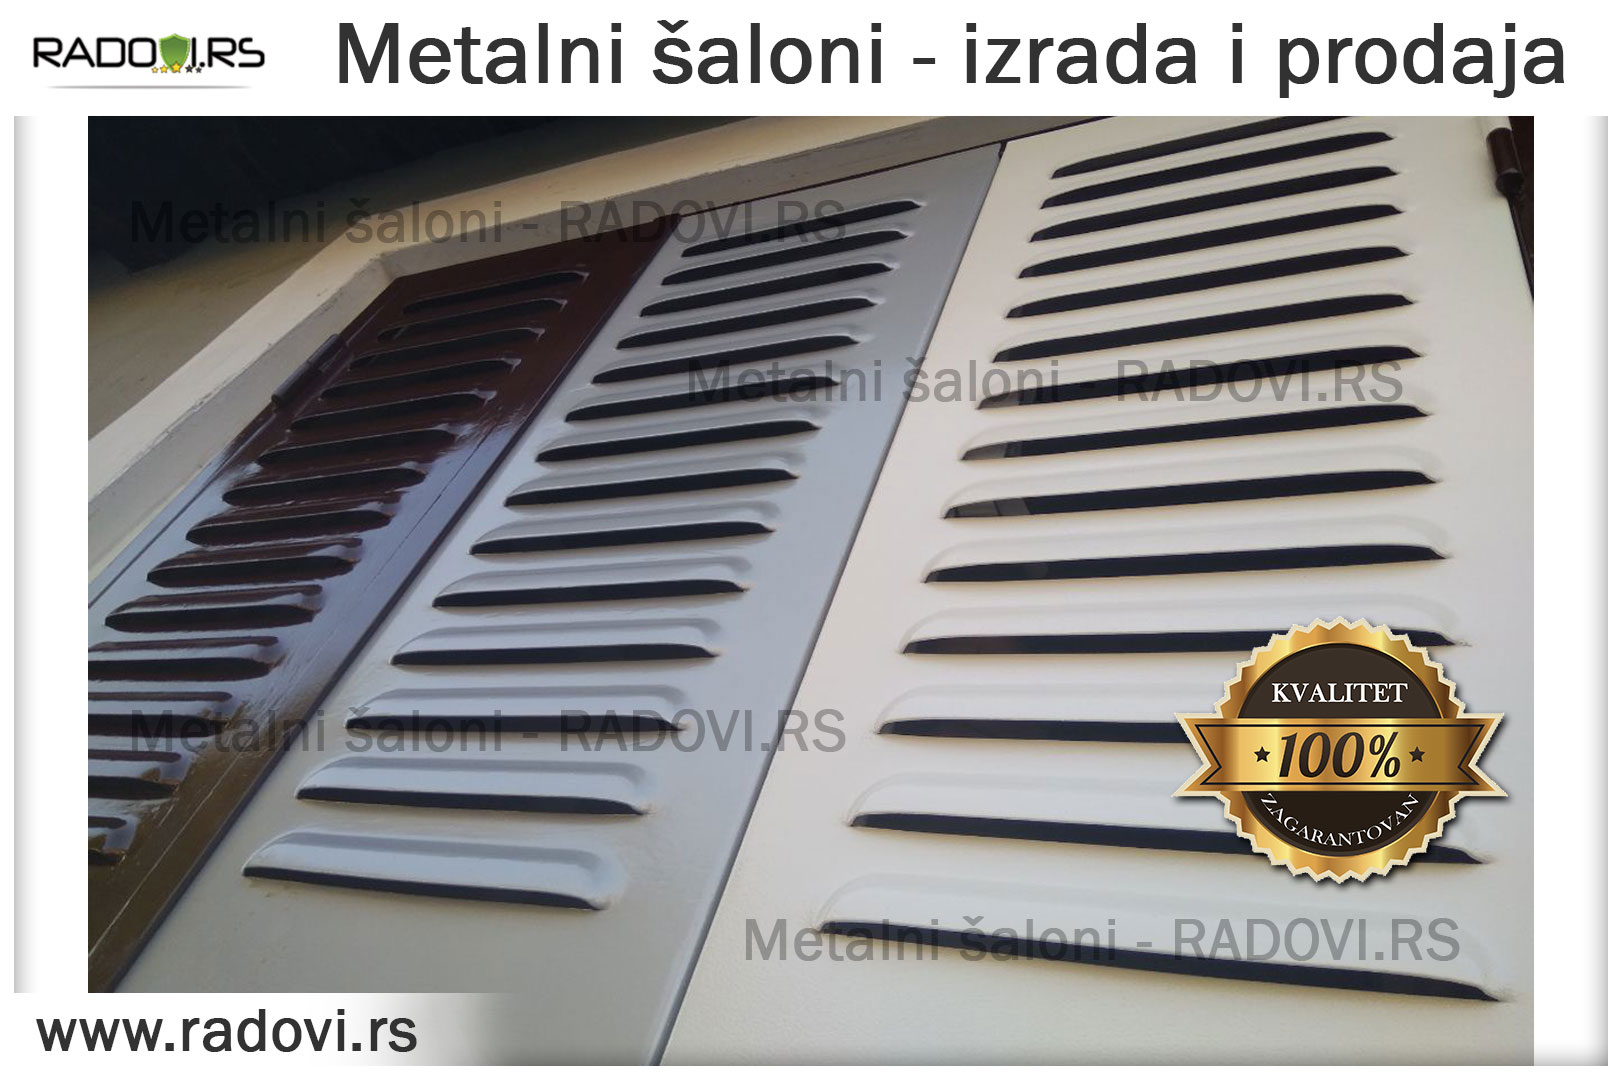 Metalni šaloni - izrada, prodaja i ugradnja - Bravar - Radovi.rs